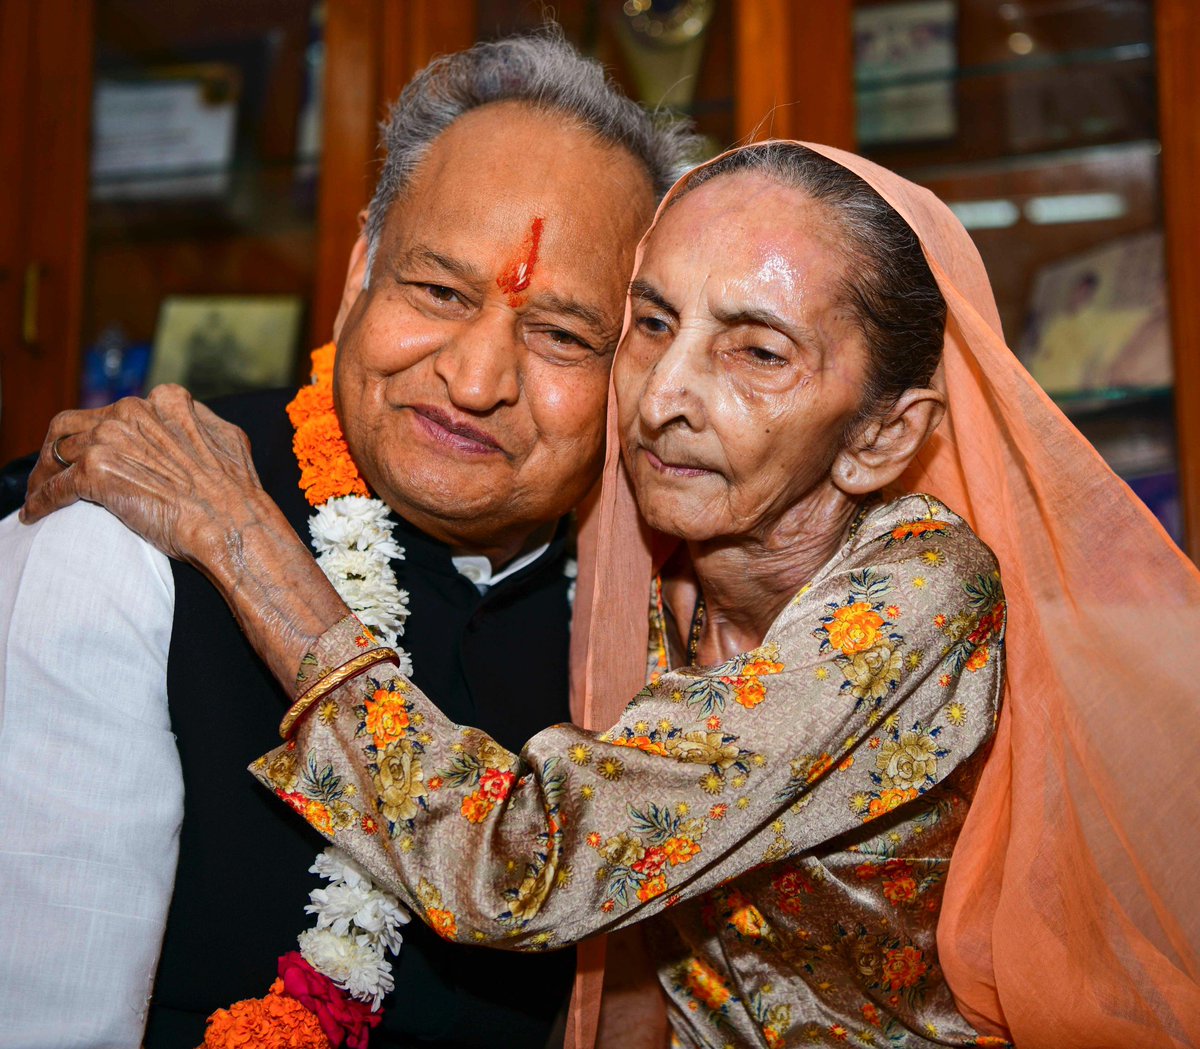 बड़ी बहन श्रीमती विमला देवी कच्छवाहा का हमारे बीच से जाना मेरे लिए हमेशा के लिए एक रिक्त स्थान छोड़ गया है जिसे कभी भरा नहीं जा सकेगा। बाईजी मेरे लिए मां के समान थीं। उनकी कमी मेरे जीवन में हमेशा खलती रहेगी। अपने 93 वर्ष के जीवन में उन्होंने सभी को बेहद स्नेह और आशीर्वाद दिया।